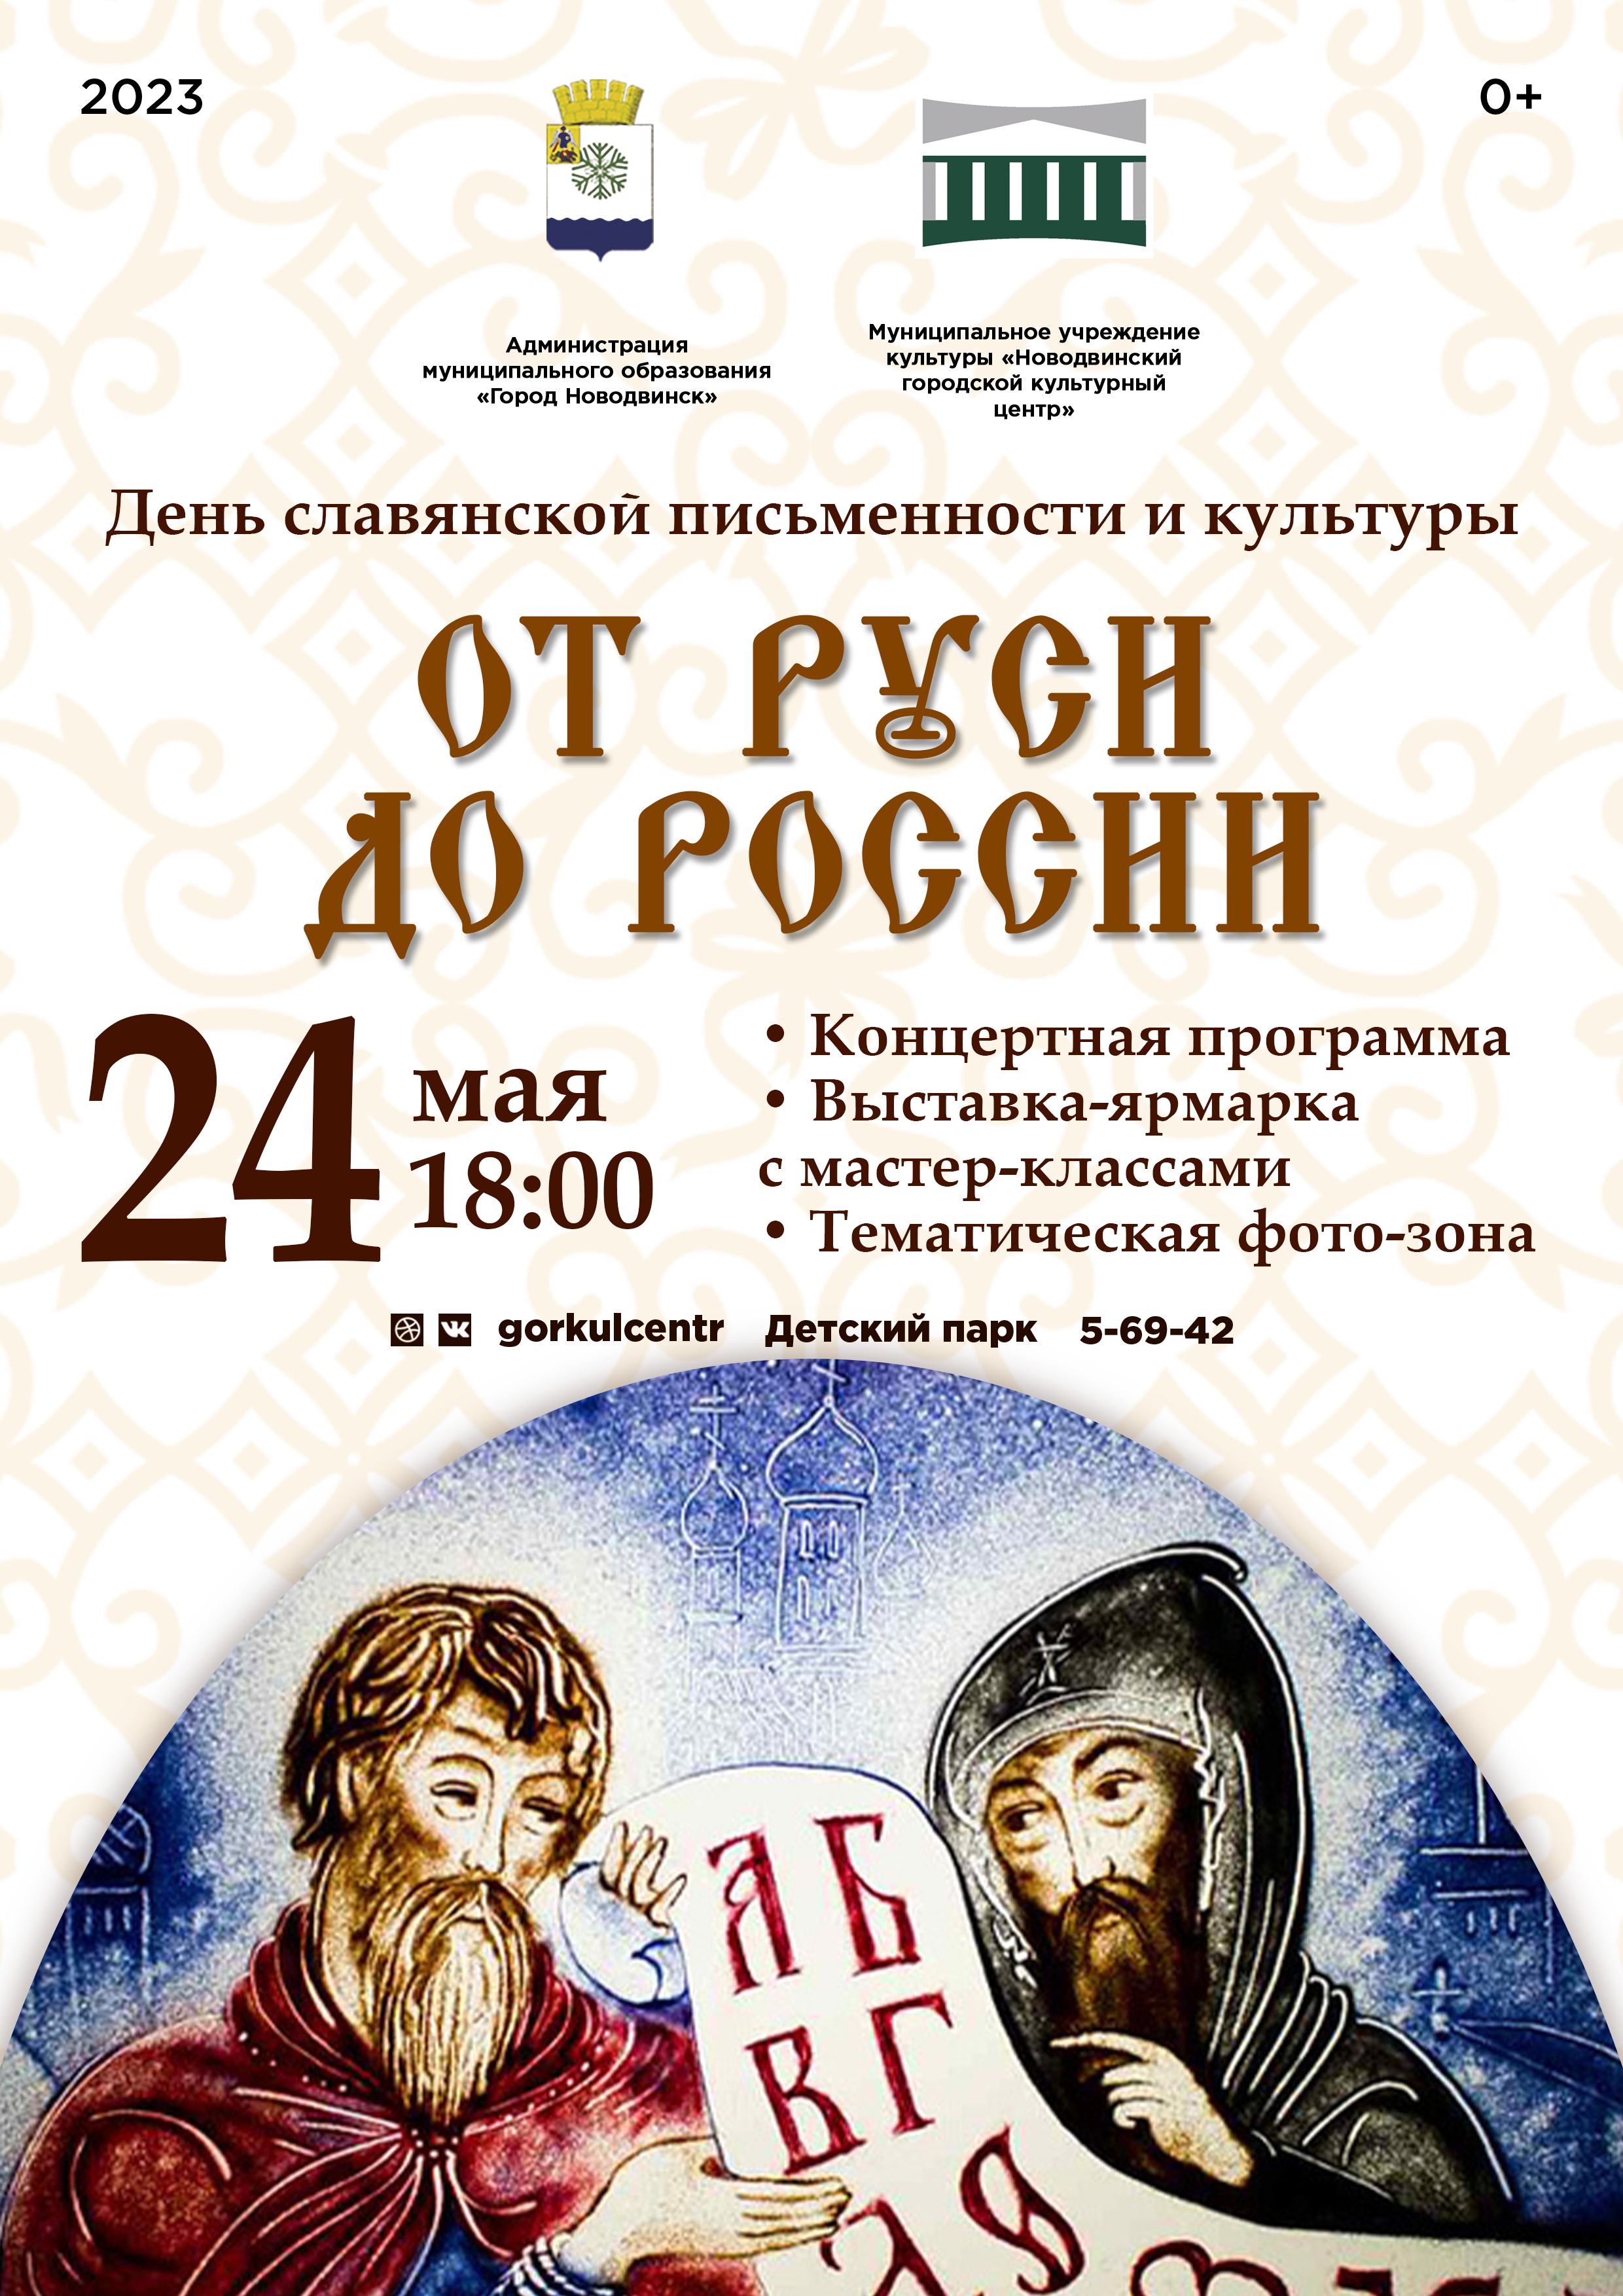 Ежегодно, 24 мая во всех славянских странах отмечают День славянской письменности и культуры.